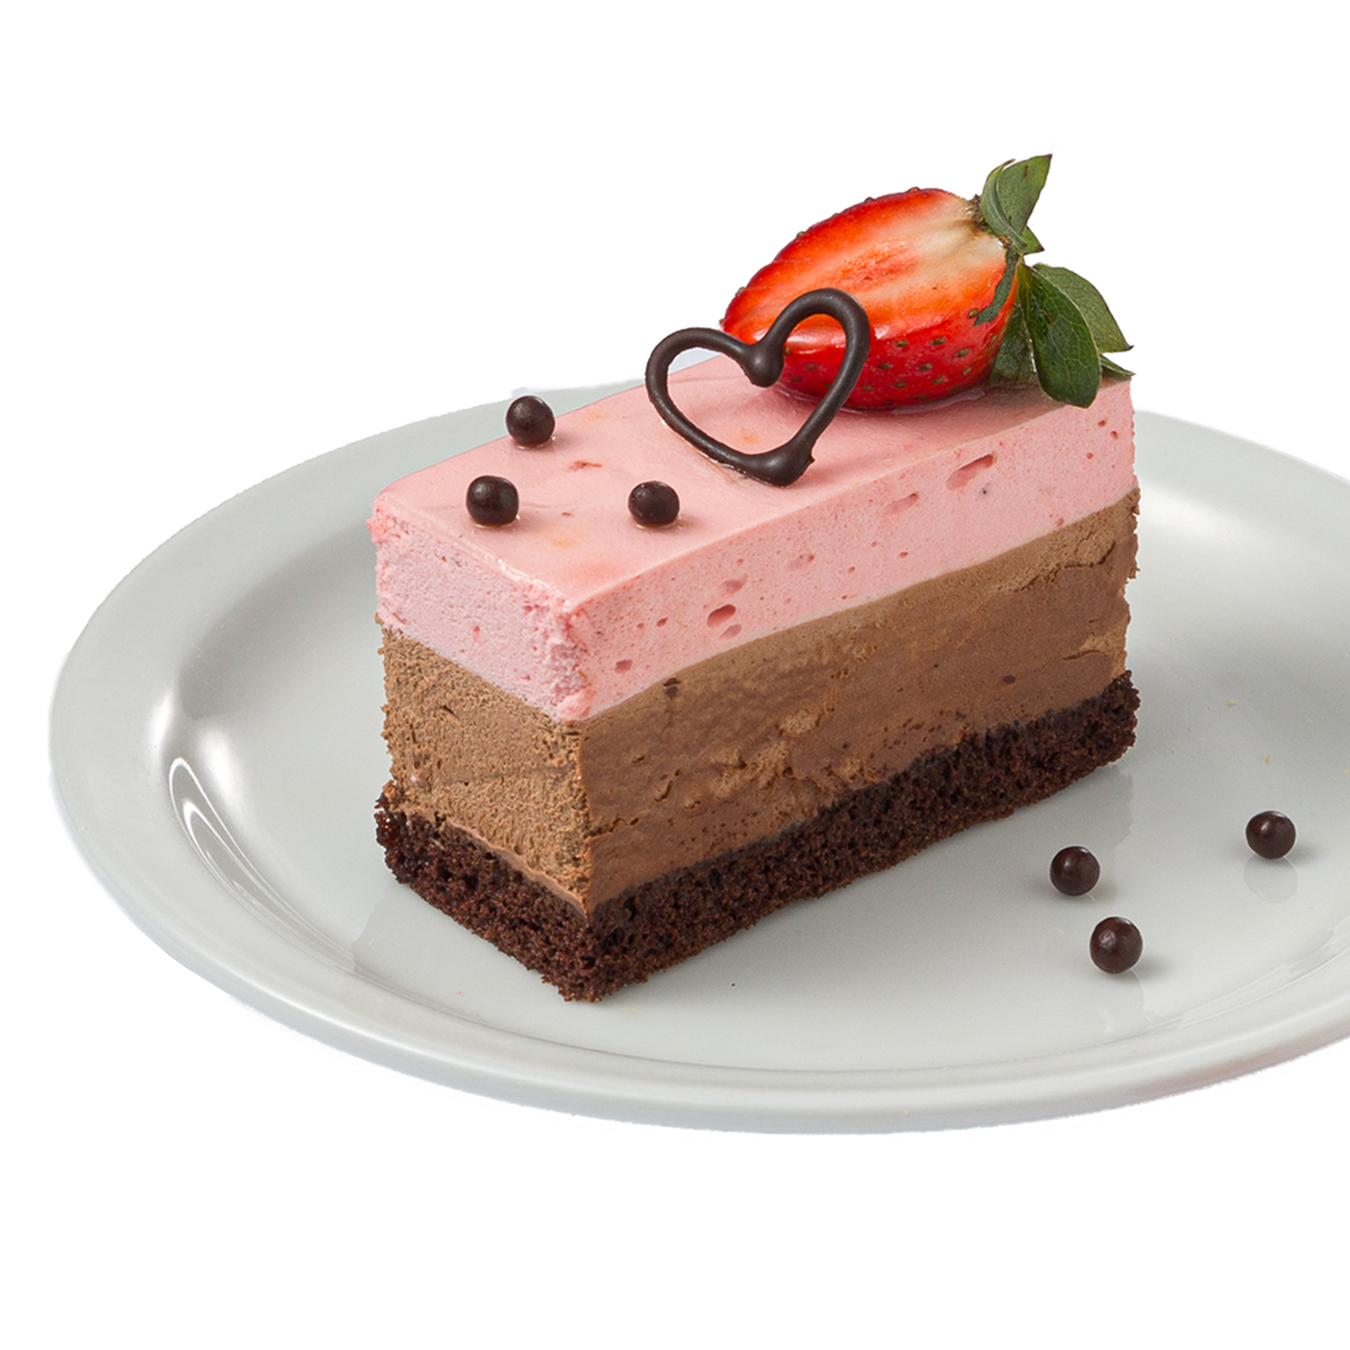 Strawberry-chocolate cake 120g